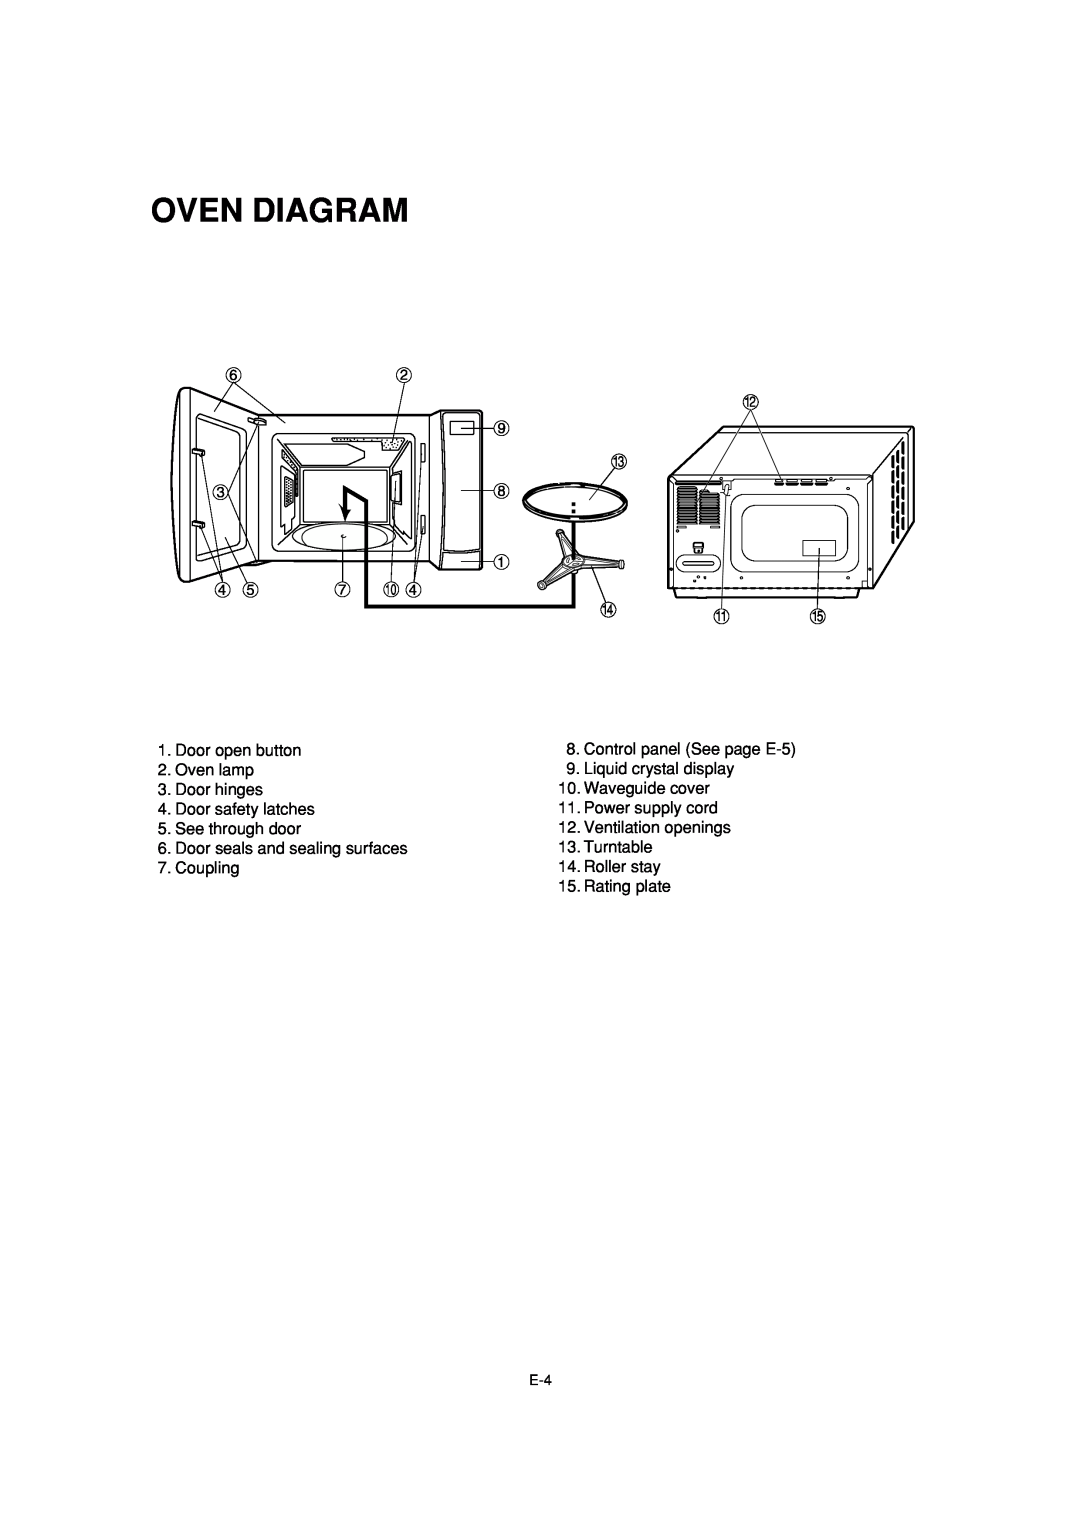 Sharp R-231F Oven Diagram, Door open button 2. Oven lamp 3. Door hinges, Door safety latches 5. See through door 